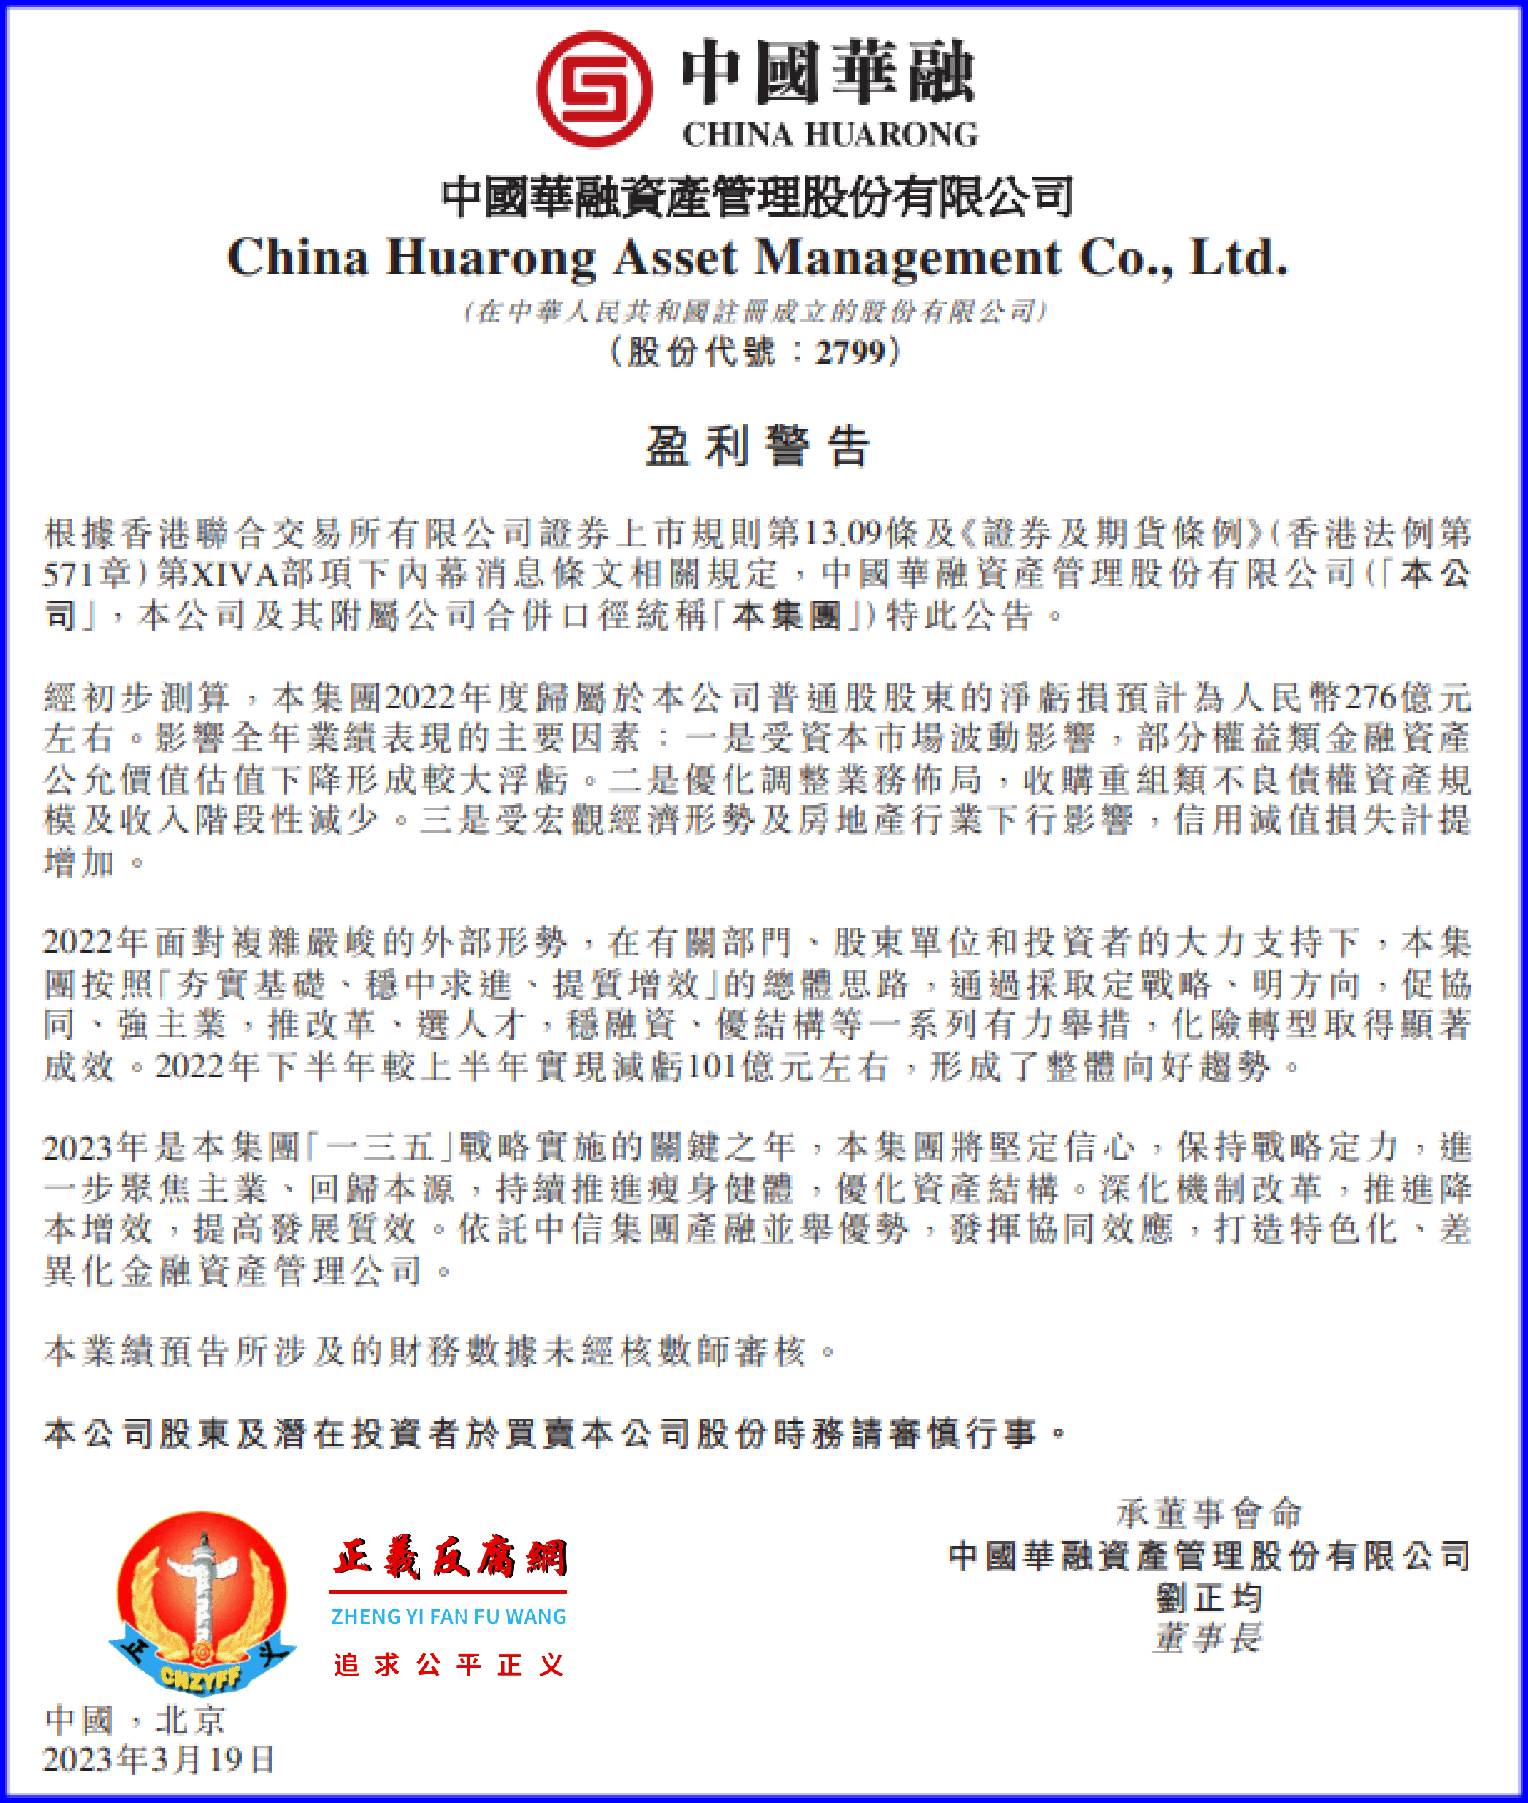 中国华融资产管理股份有限公司发布公告《盈利警告》 。.png